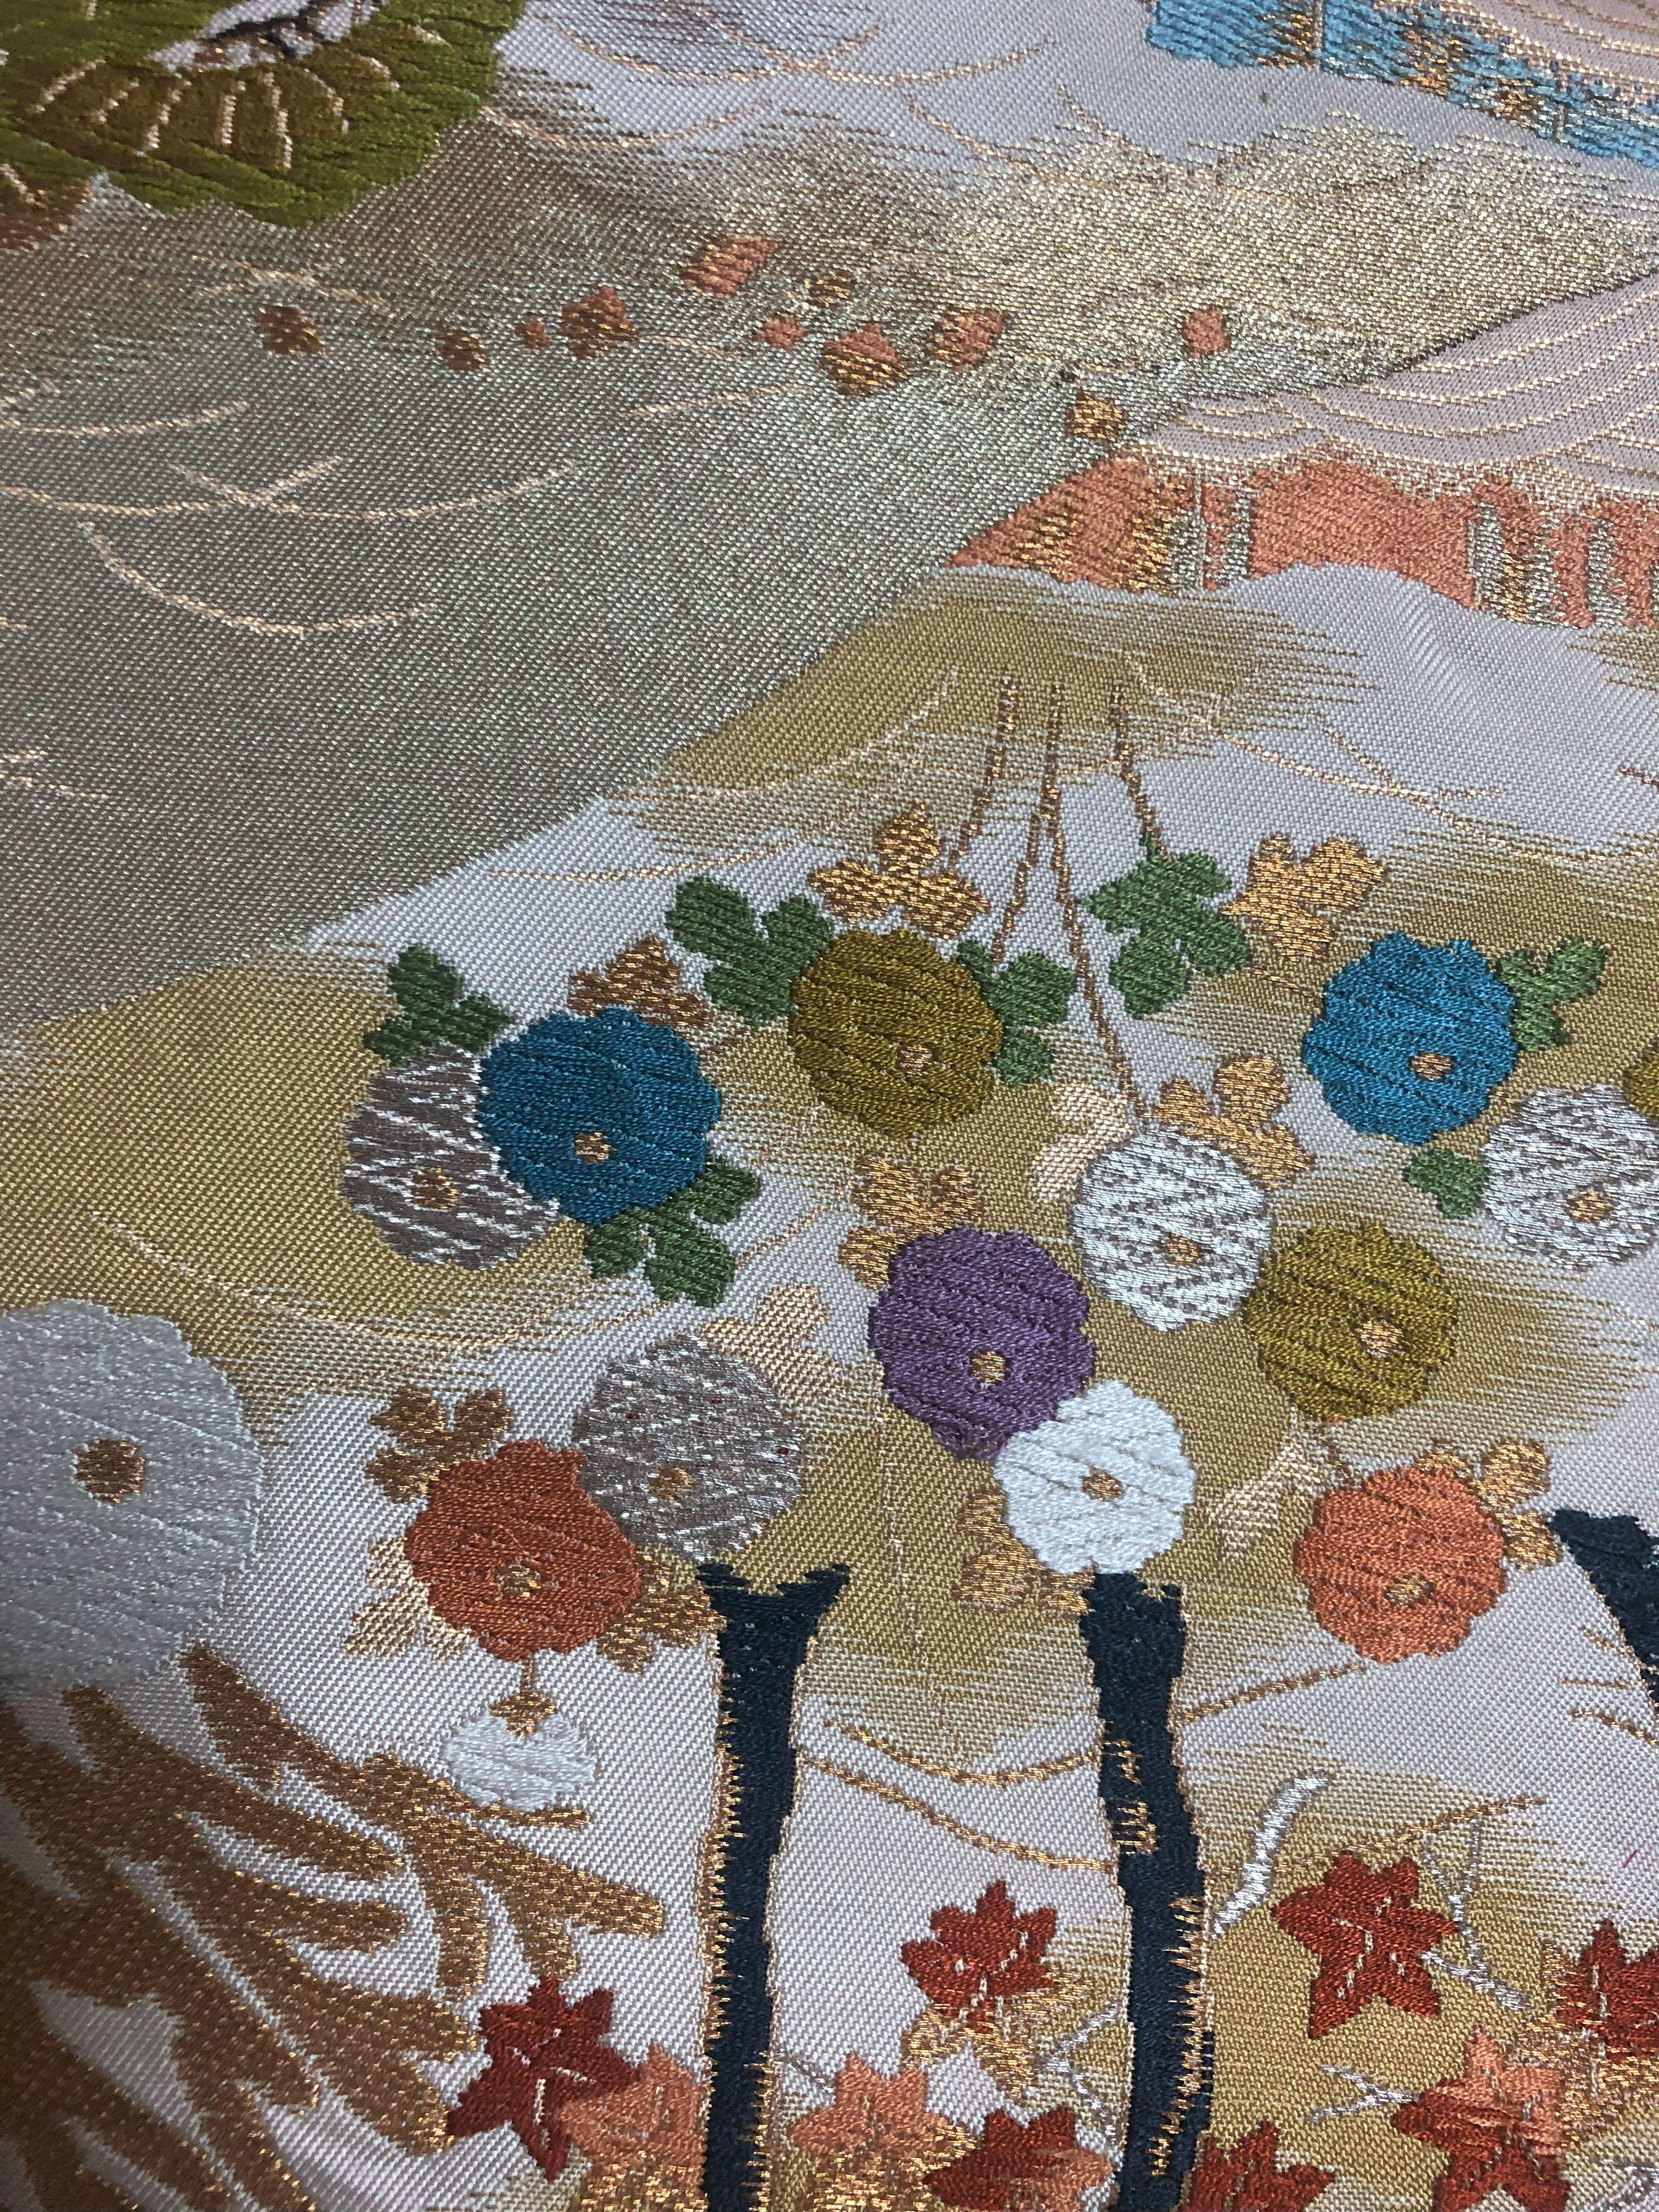 Contemporary Kimono Art / Japanese Wall Art / “Garden by the Sea” For Sale